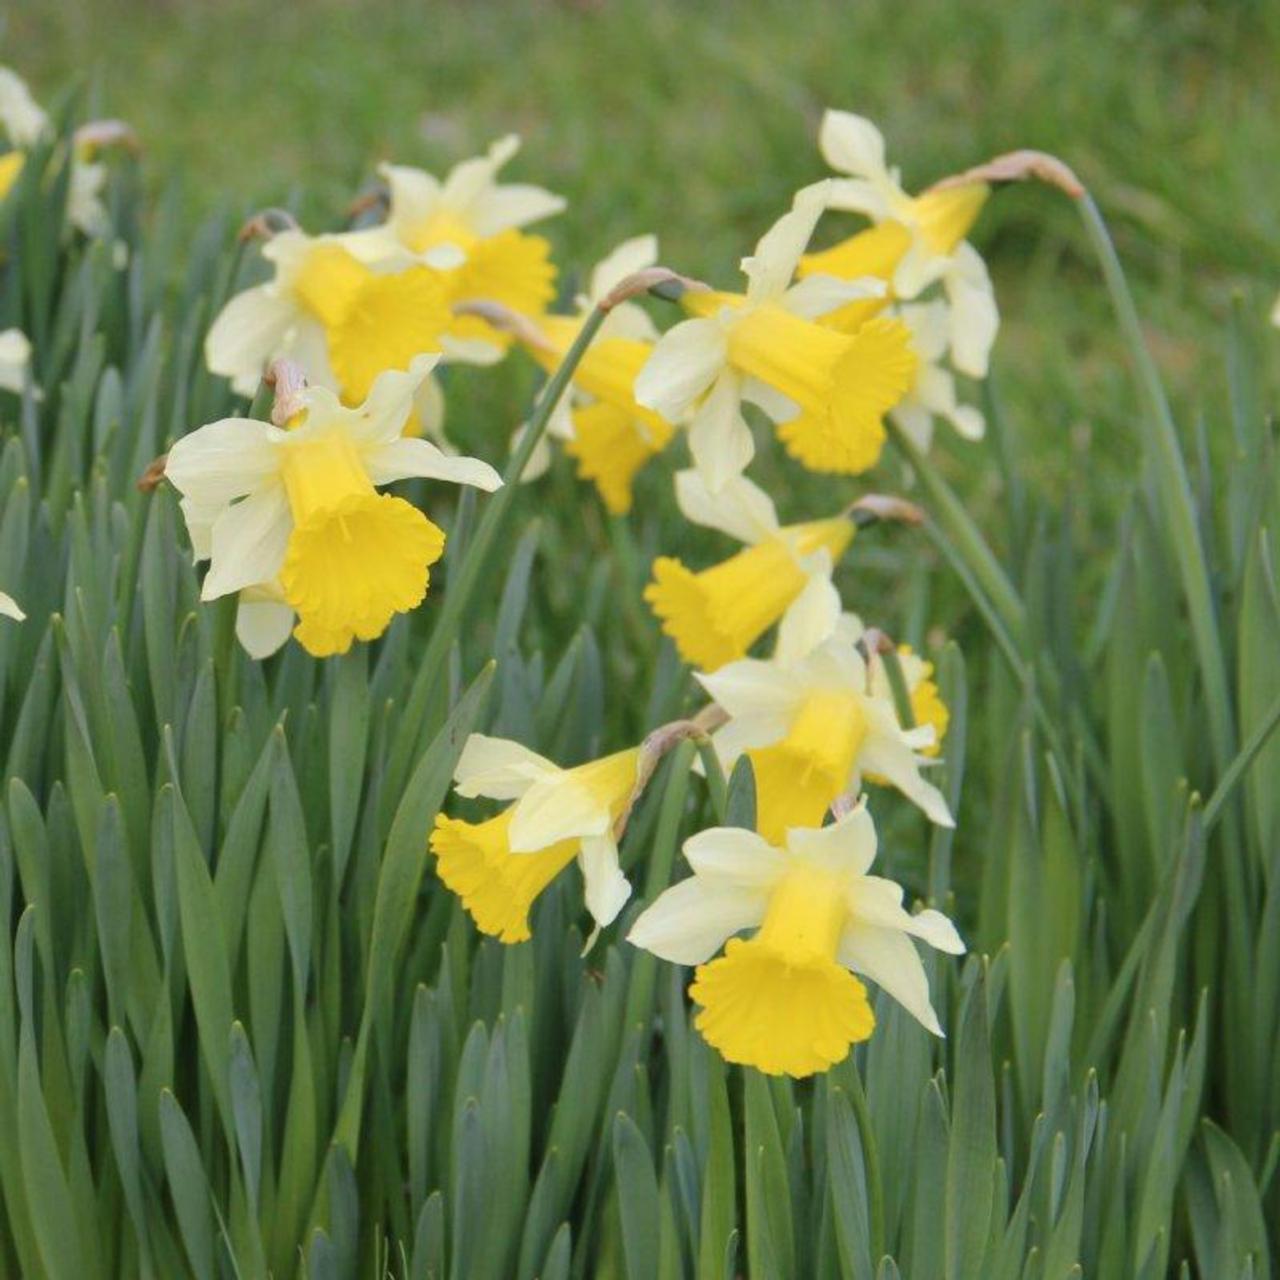 Narcissus lobularis plant